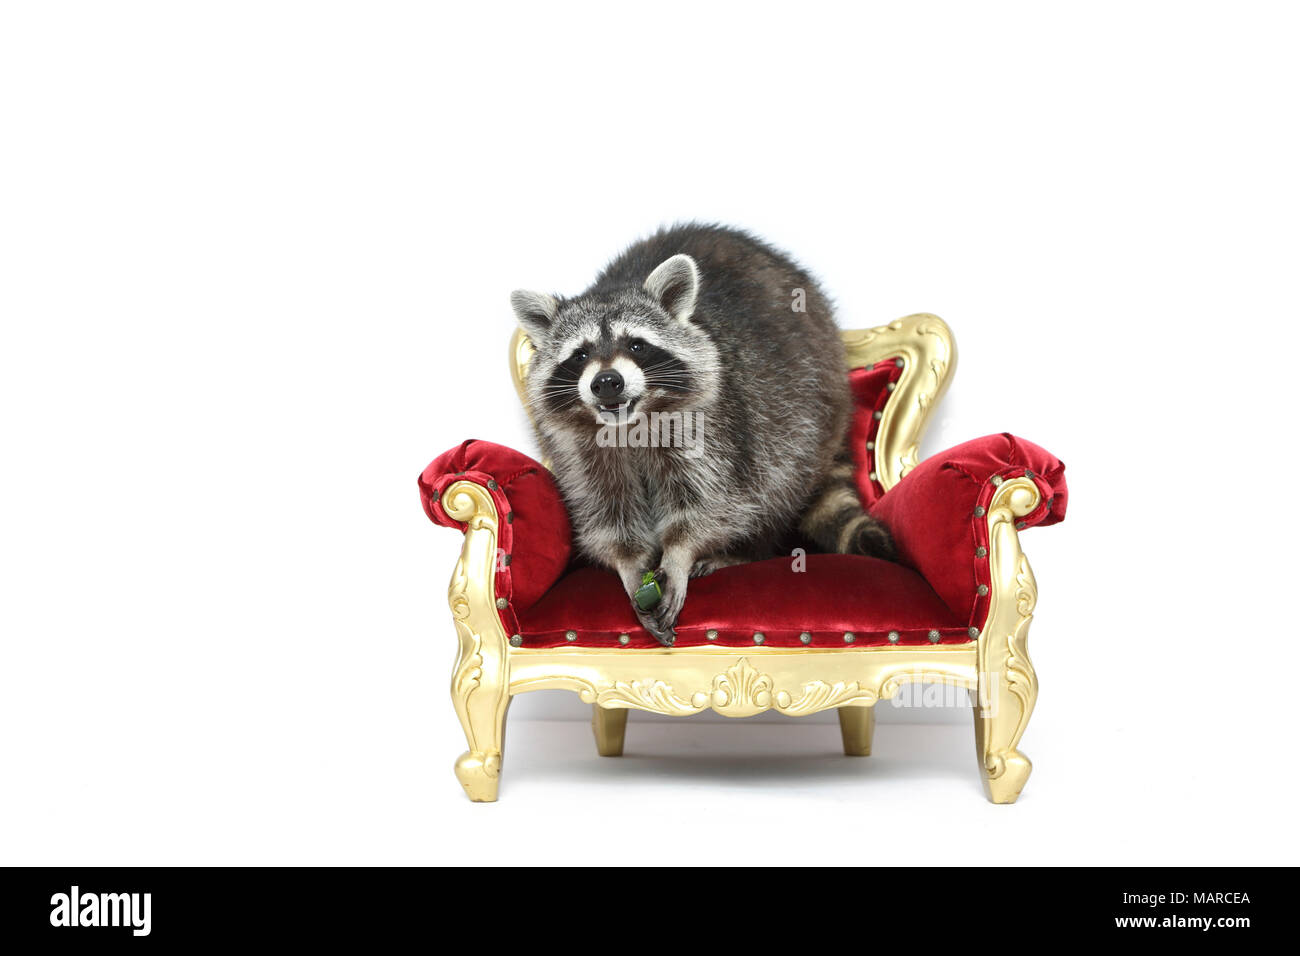 Le raton laveur (Procyon lotor). Des profils assise sur un fauteuil baroque. Studio photo sur un fond blanc. Allemagne Banque D'Images